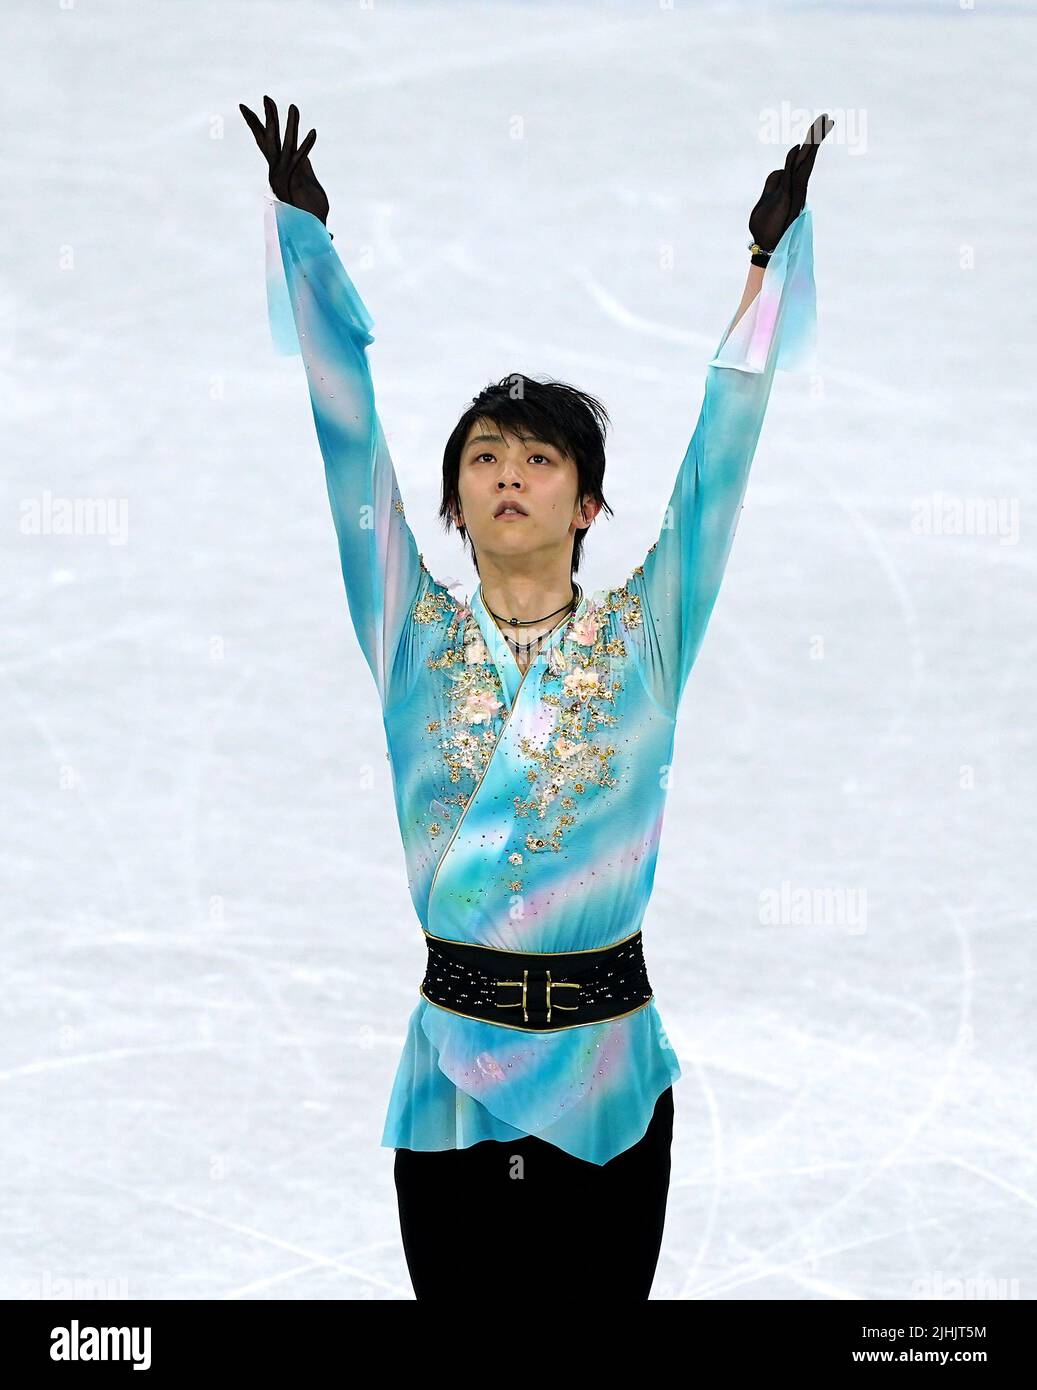 Foto del archivo fechada el 10-02-2022 del campeón olímpico doble Yuzuru Hanyu, quien ha anunciado su retiro del patinaje artístico competitivo a la edad de 27 años. Fecha de emisión: Martes 19 de julio de 2022. Foto de stock